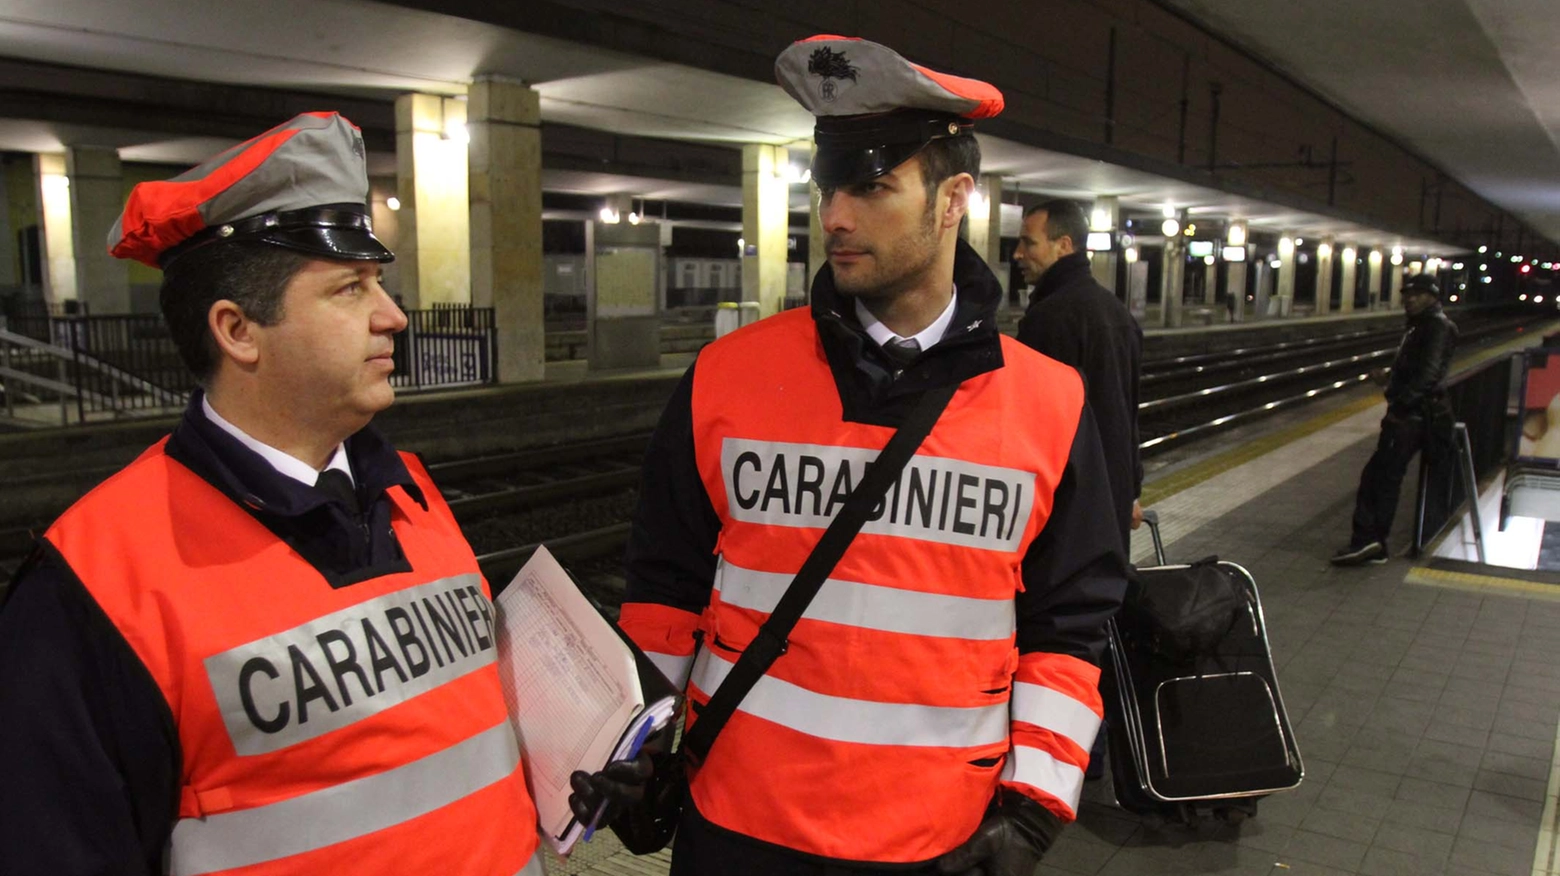 Carabinieri alla stazione ferroviaria di Monza